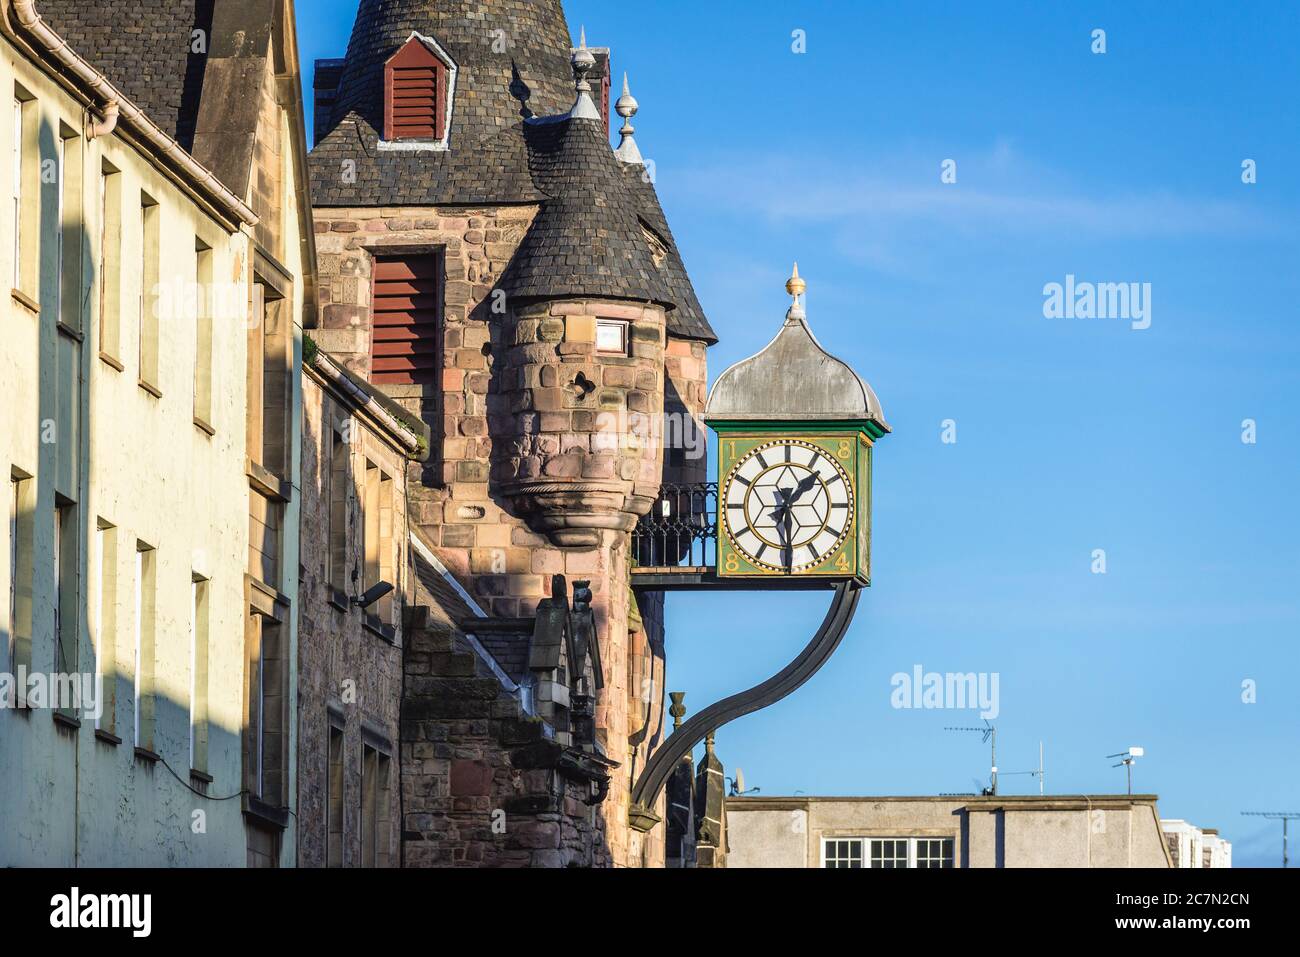 Uhr auf dem historischen Canongate Tollbooth Gebäude in der Canongate Street in Edinburgh, der Hauptstadt von Schottland, Teil von Großbritannien Stockfoto